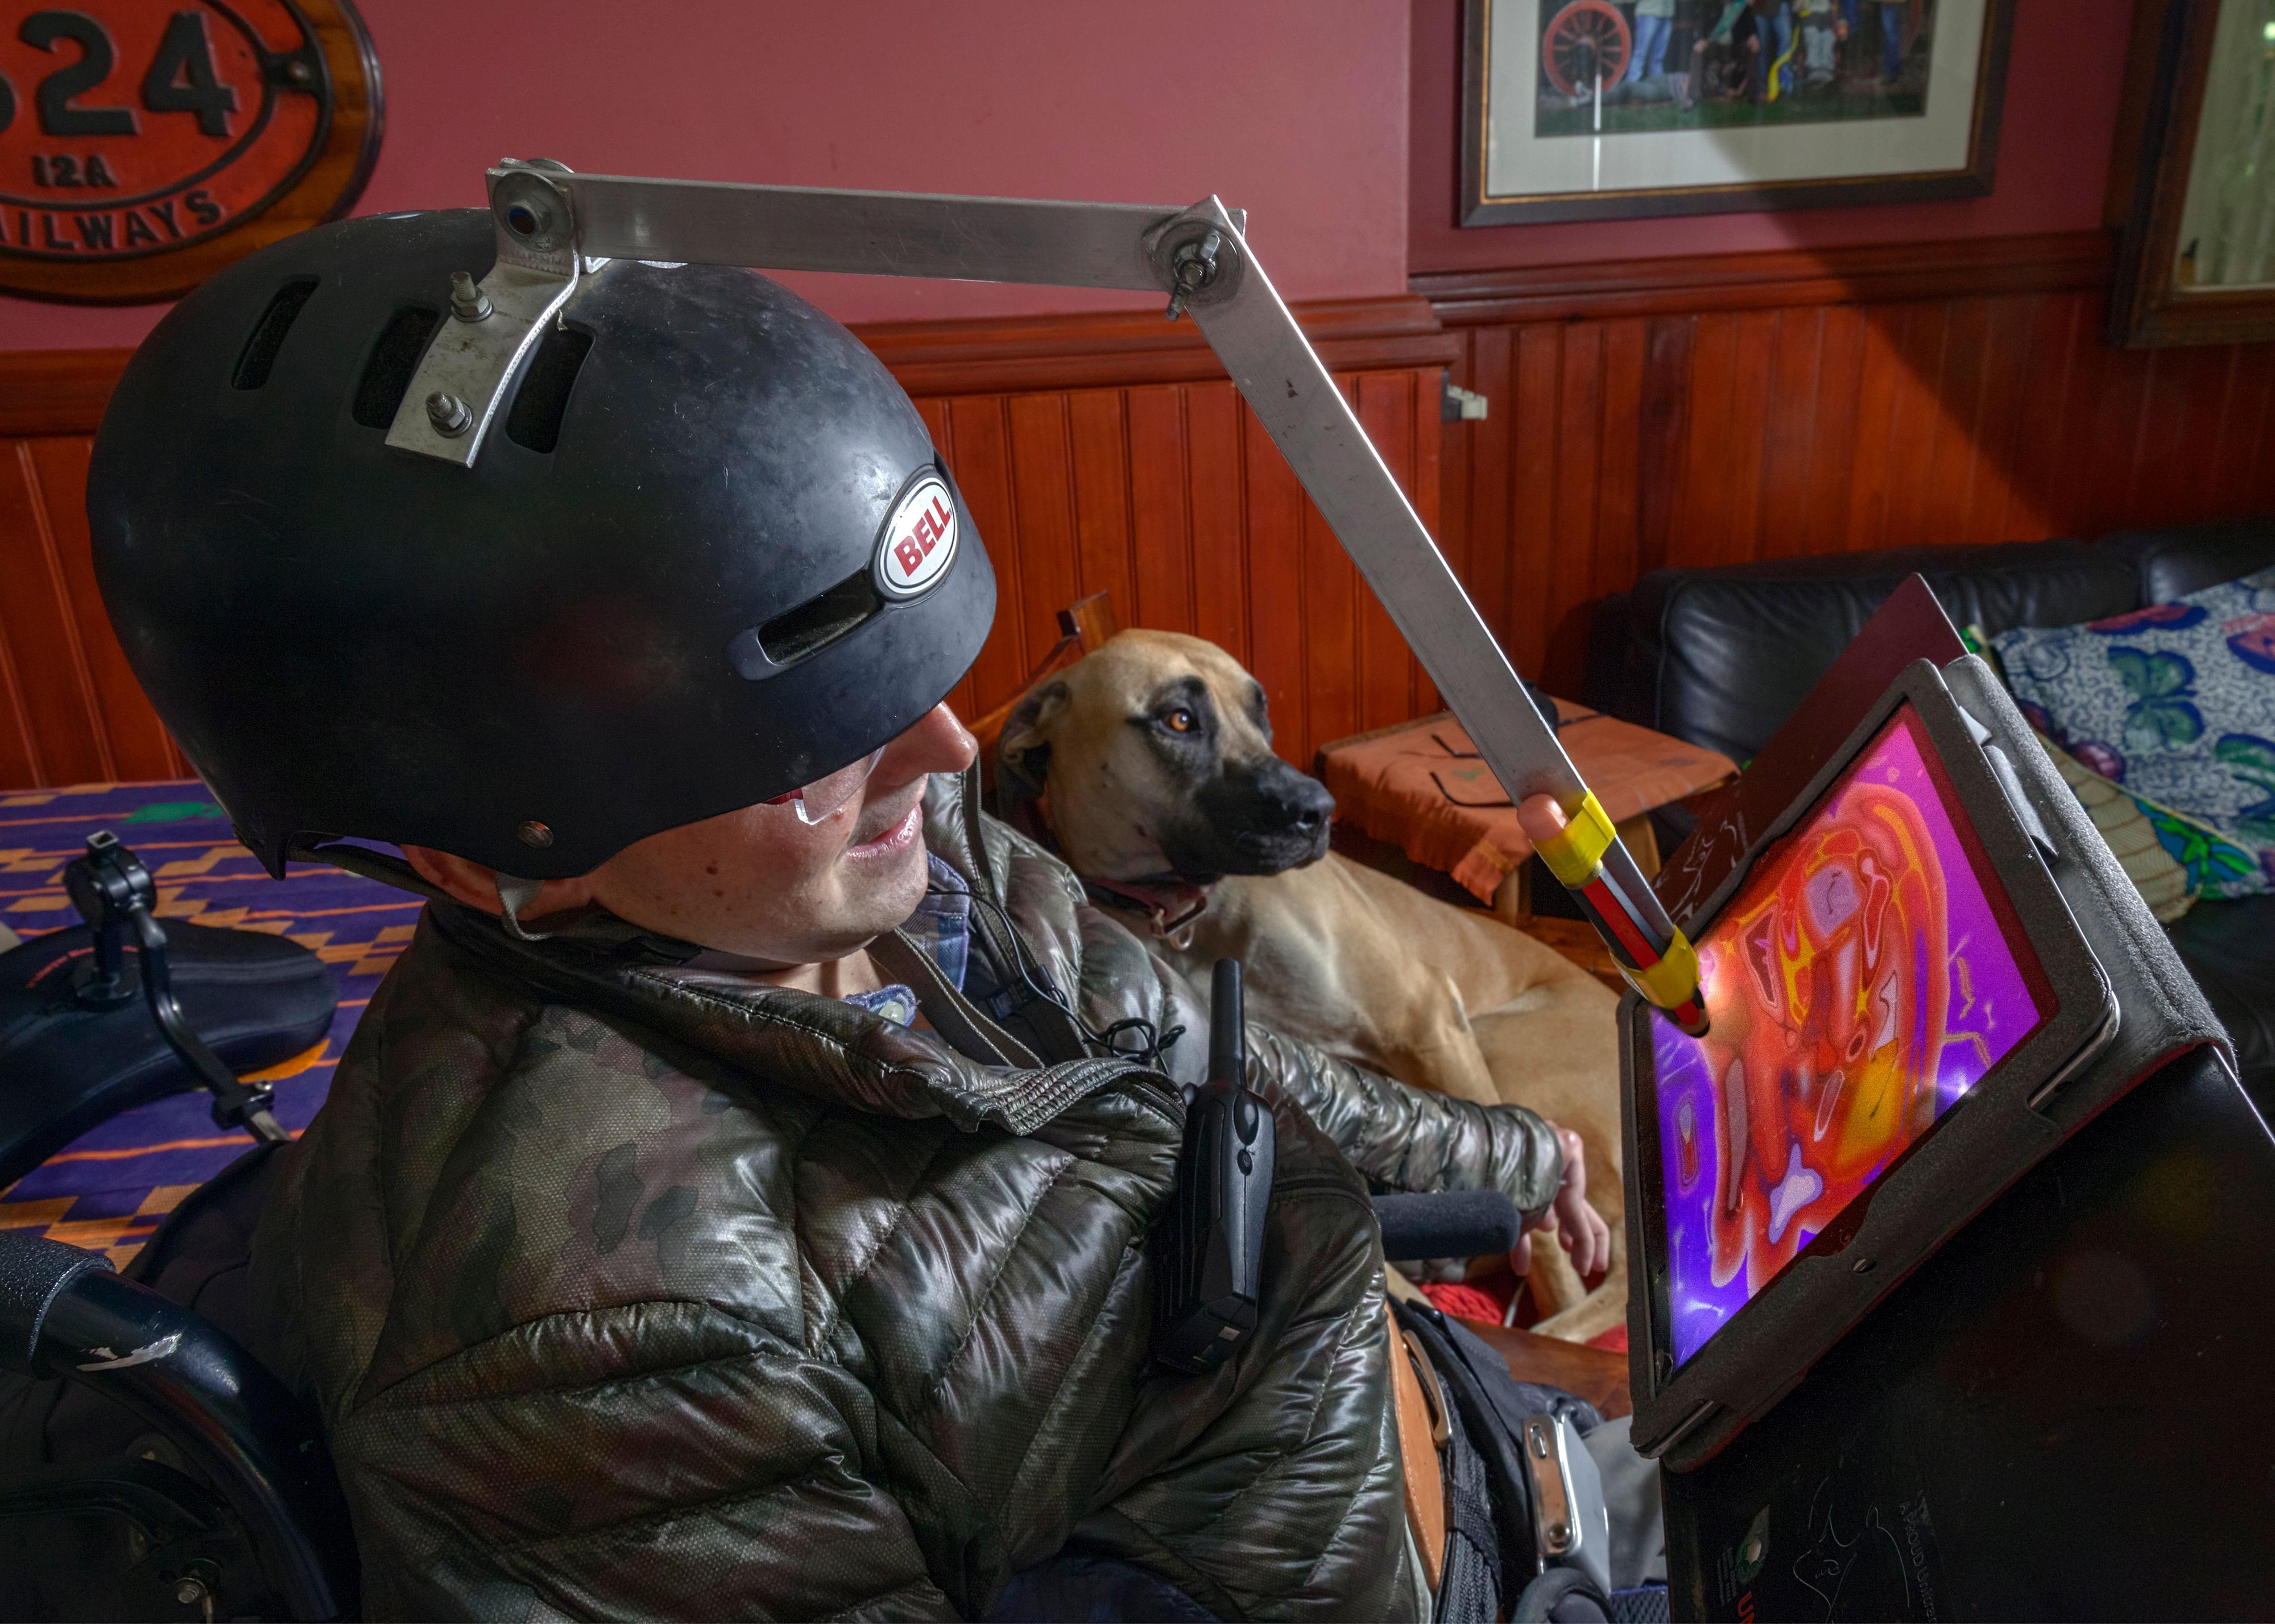 Ein Mann mit Helm auf dem Kopf. Der Helm hat eine Vorrichtung mit einem Stift, der Farben auf einen Bildschirm malt. Im Hintergrund liegt ein großer brauner Hund.